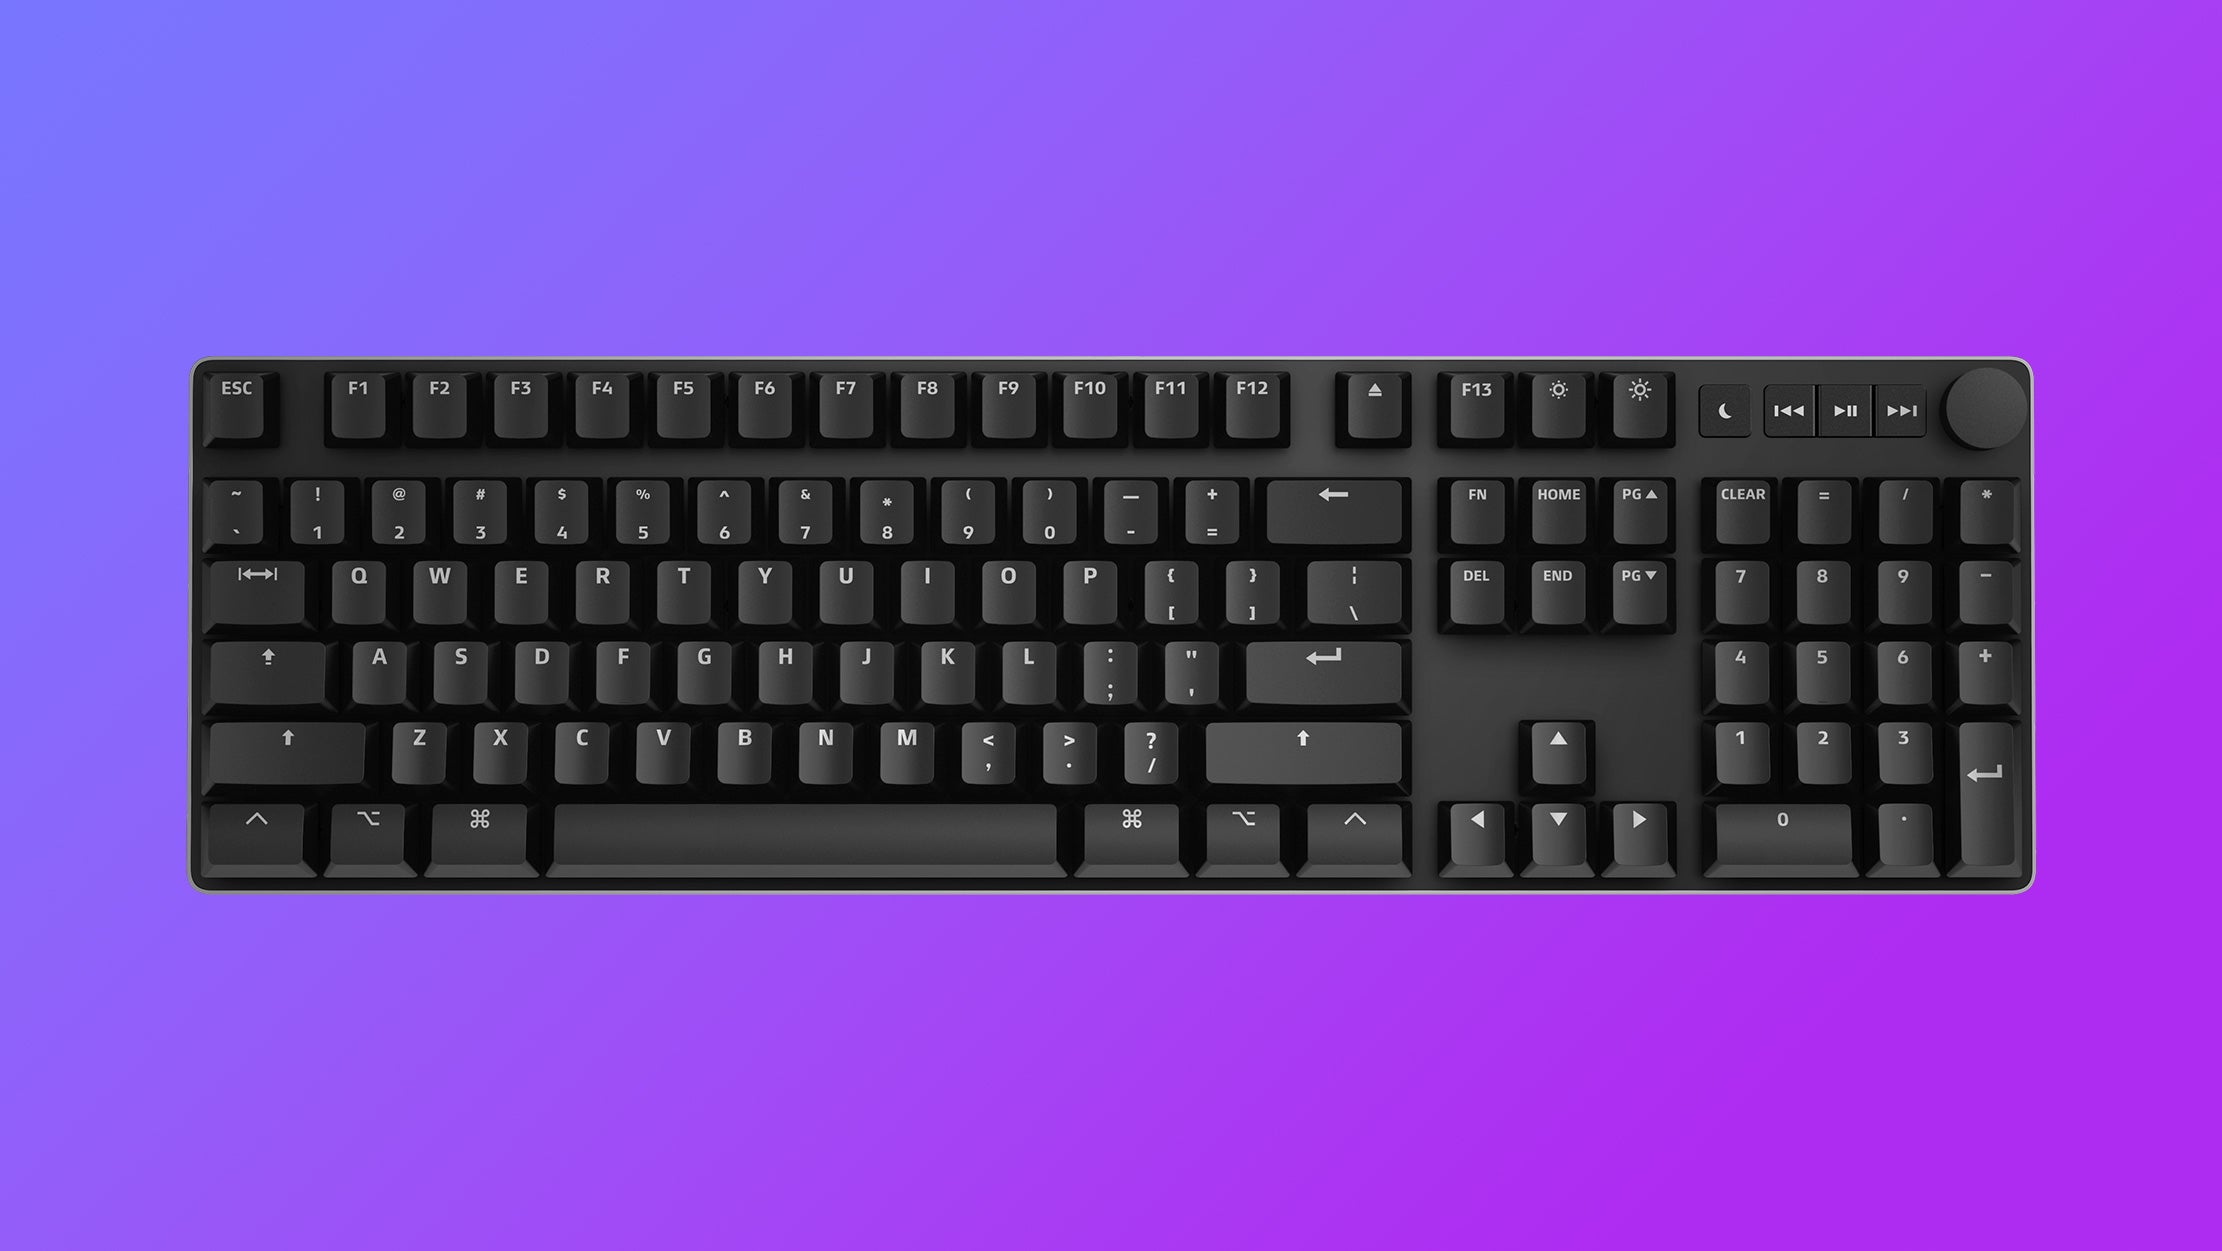 Un teclado mecánico das Keyboard Mactigr, con un diseño de tamaño completo, rueda de volumen y teclas Mac en todas partes.